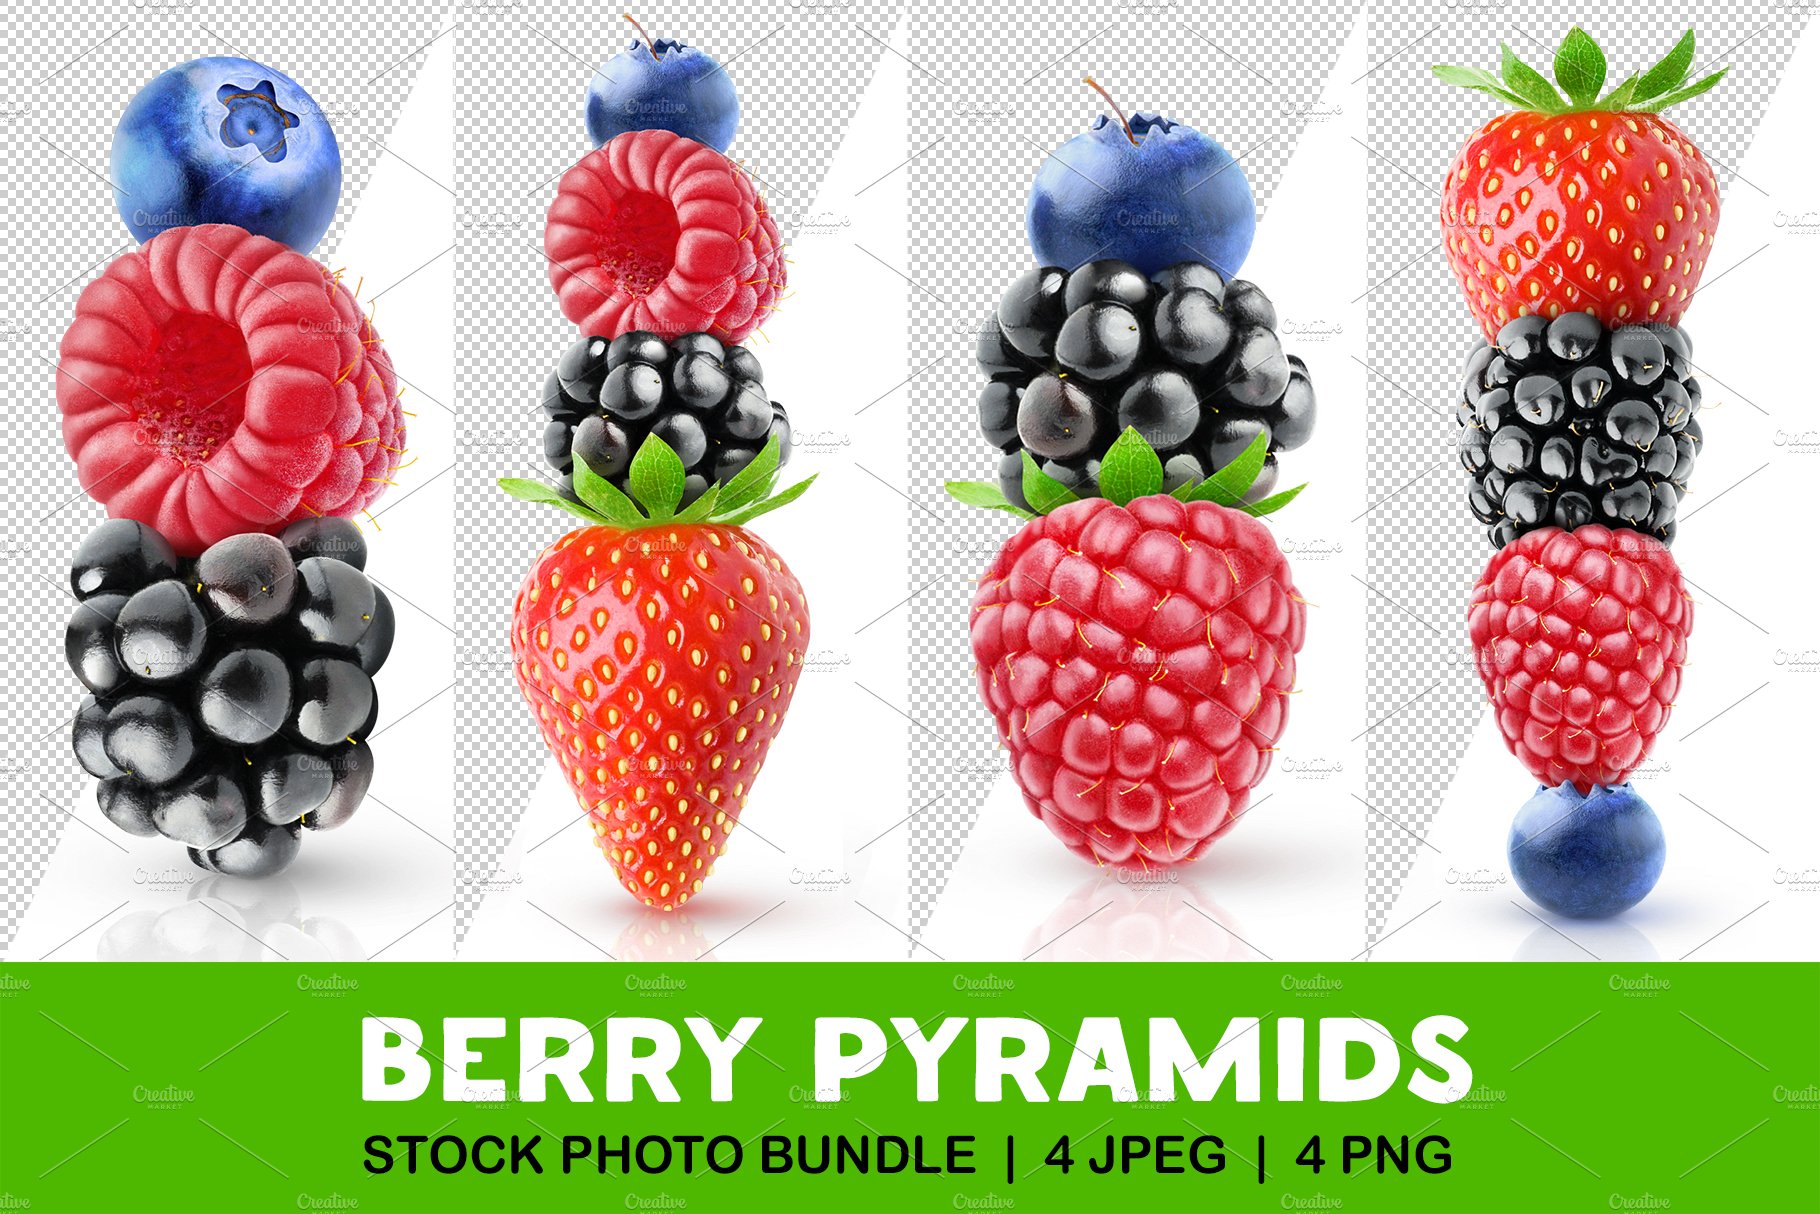 Fresh berry pyramids cover image.